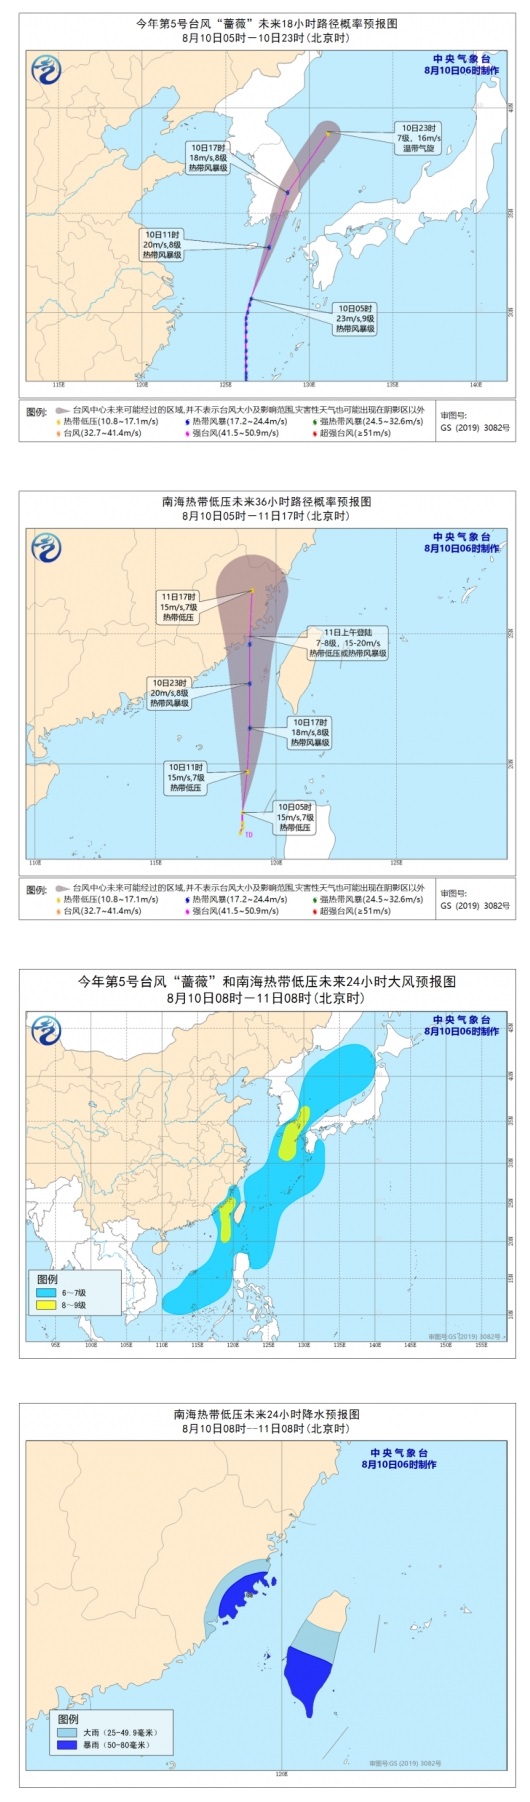 台风路径实时发布系统：台风蔷薇持续北移 福建沿海将有6-7级大风